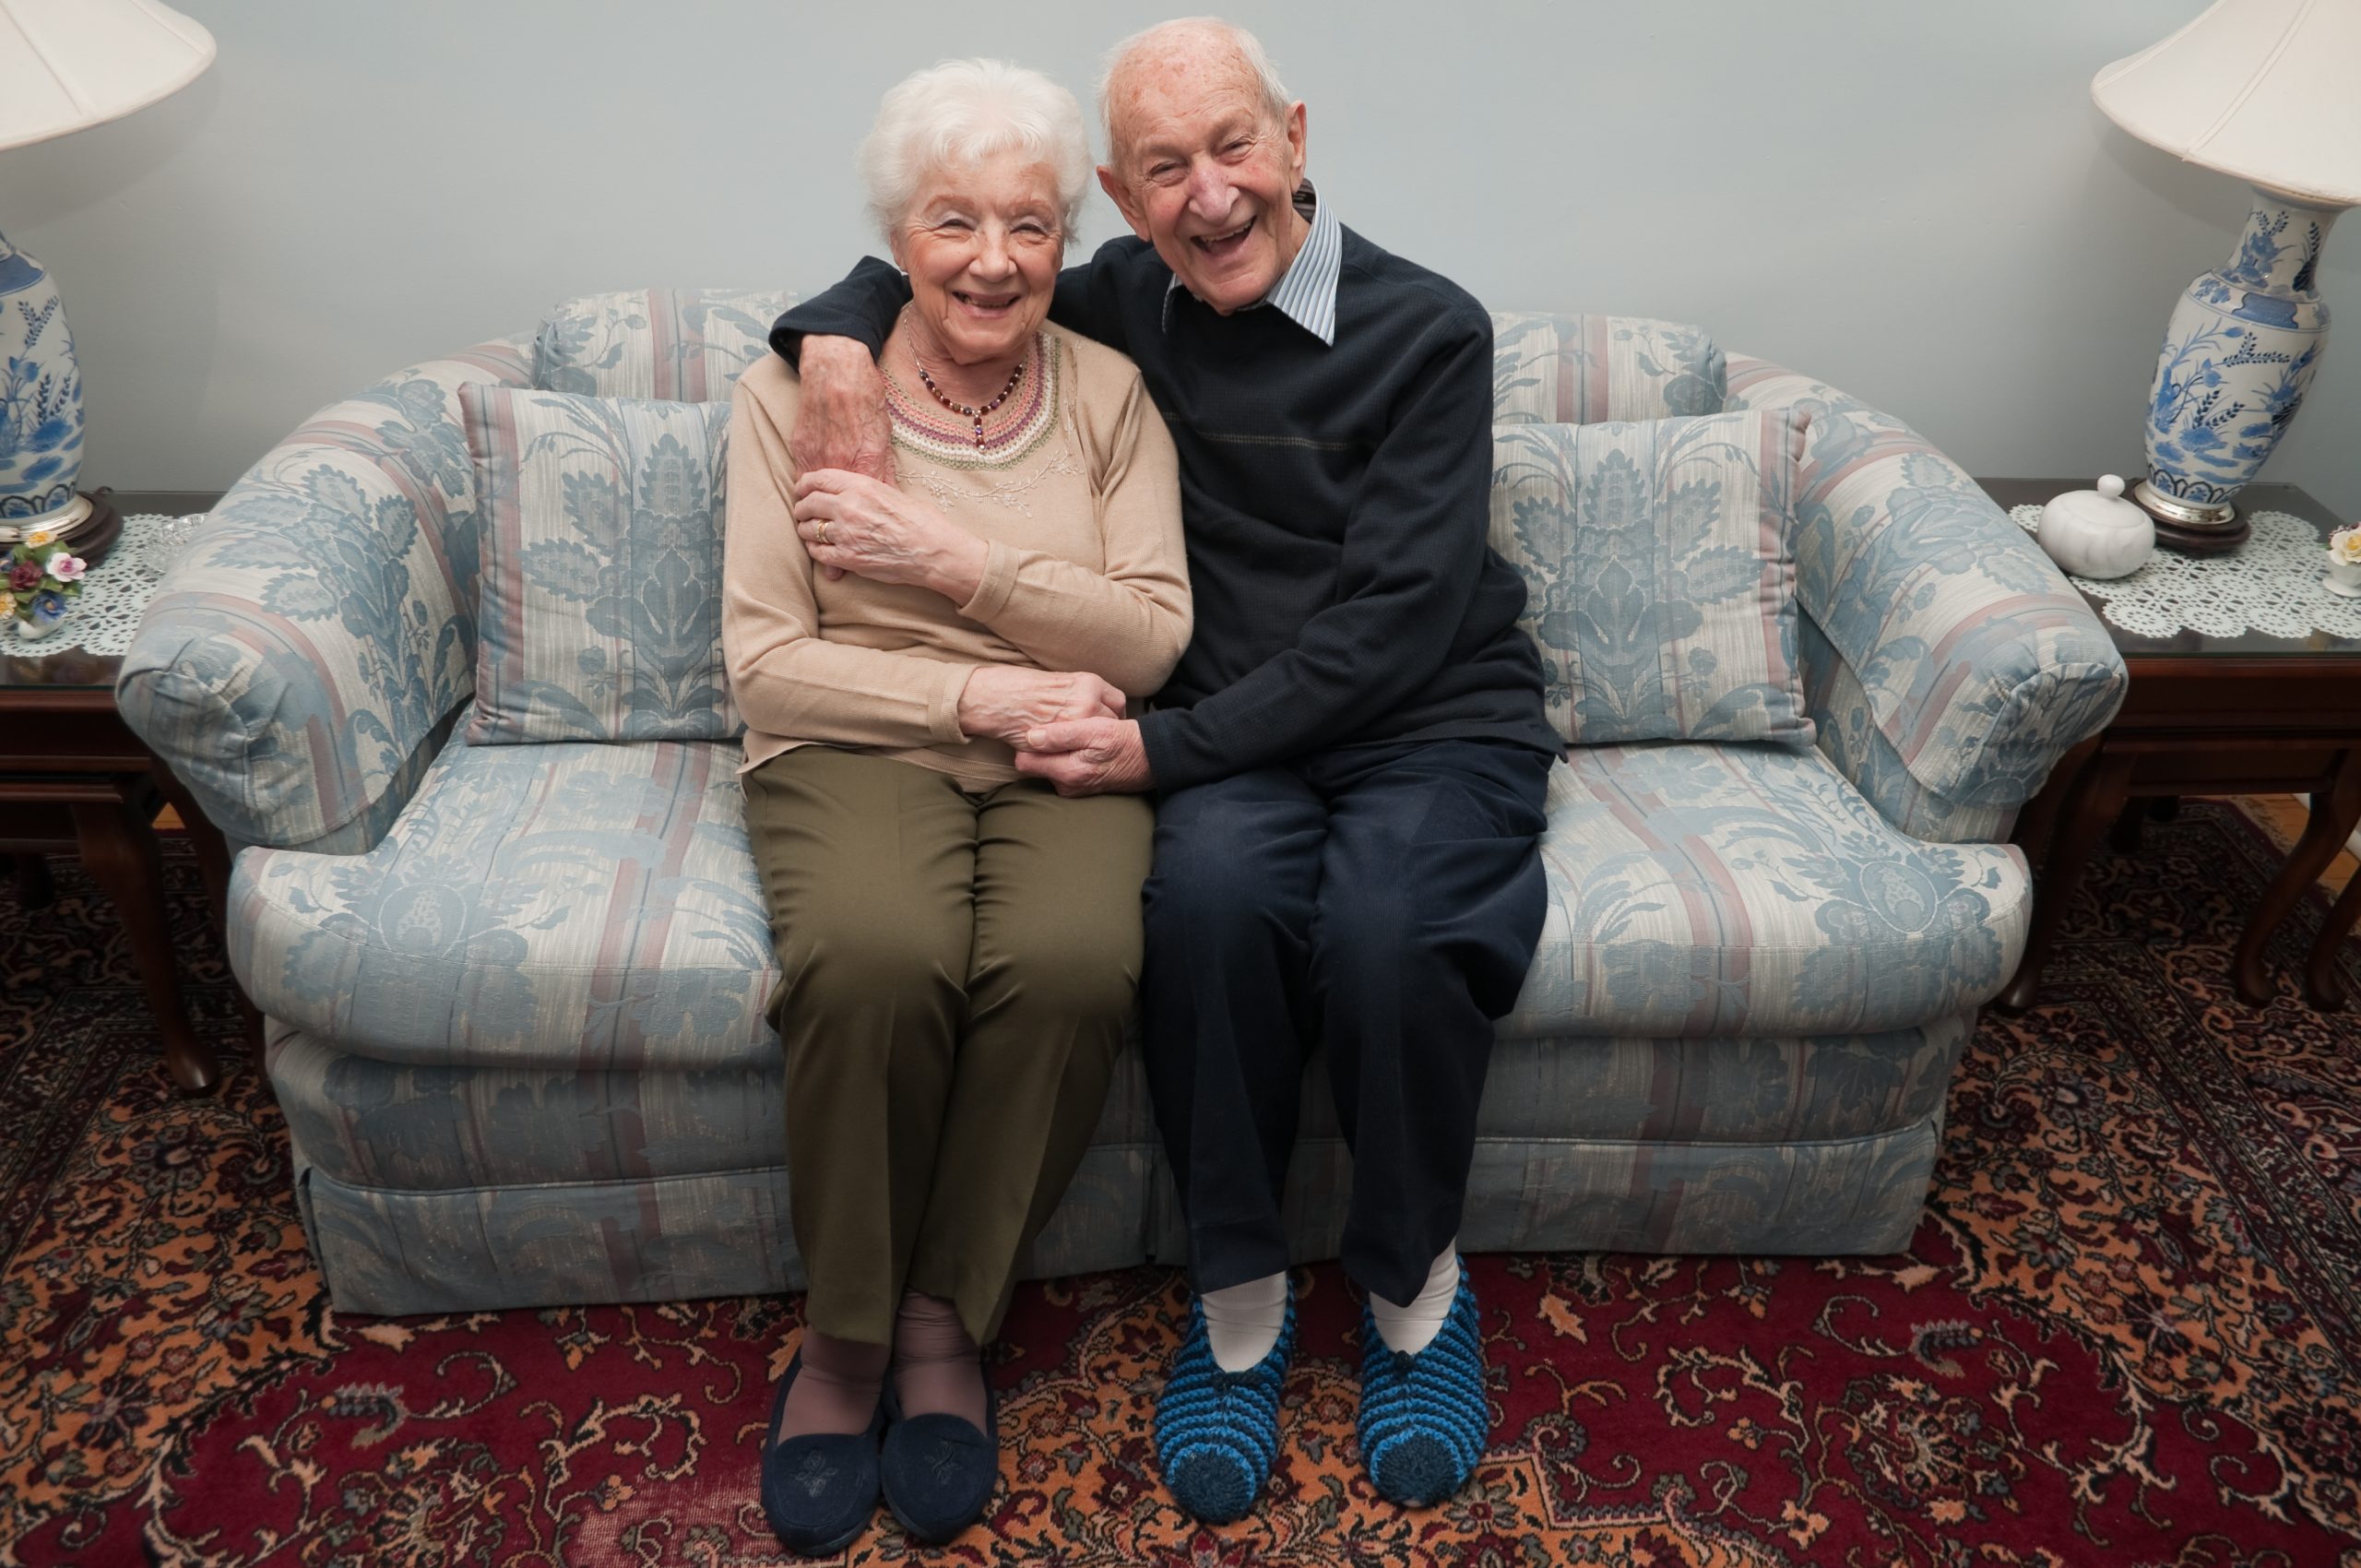 Older people cuddling on a sofa